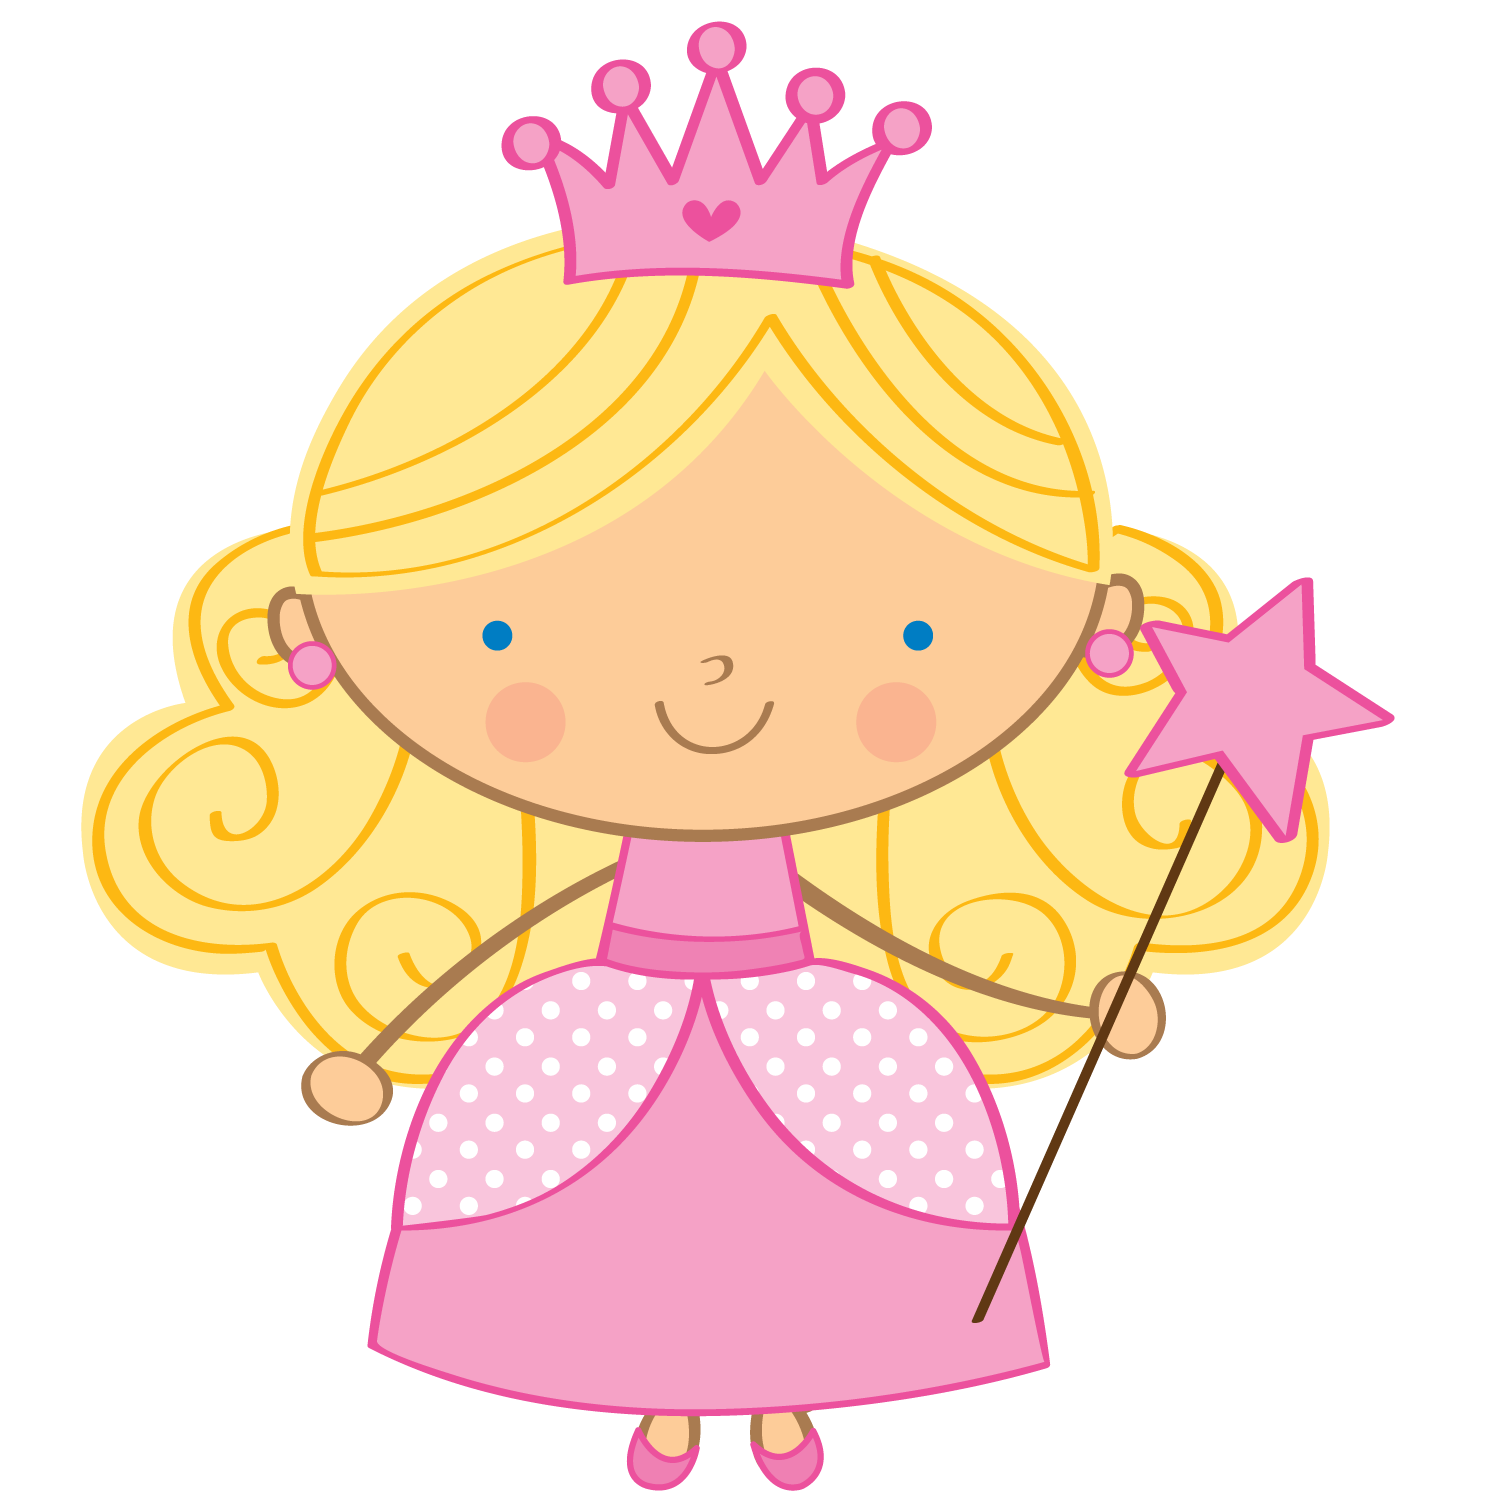 Baby princess nina. Принцесса для детей. Принцесса для дошкольников. Принцессы для малышей. Мультяшные куколки.